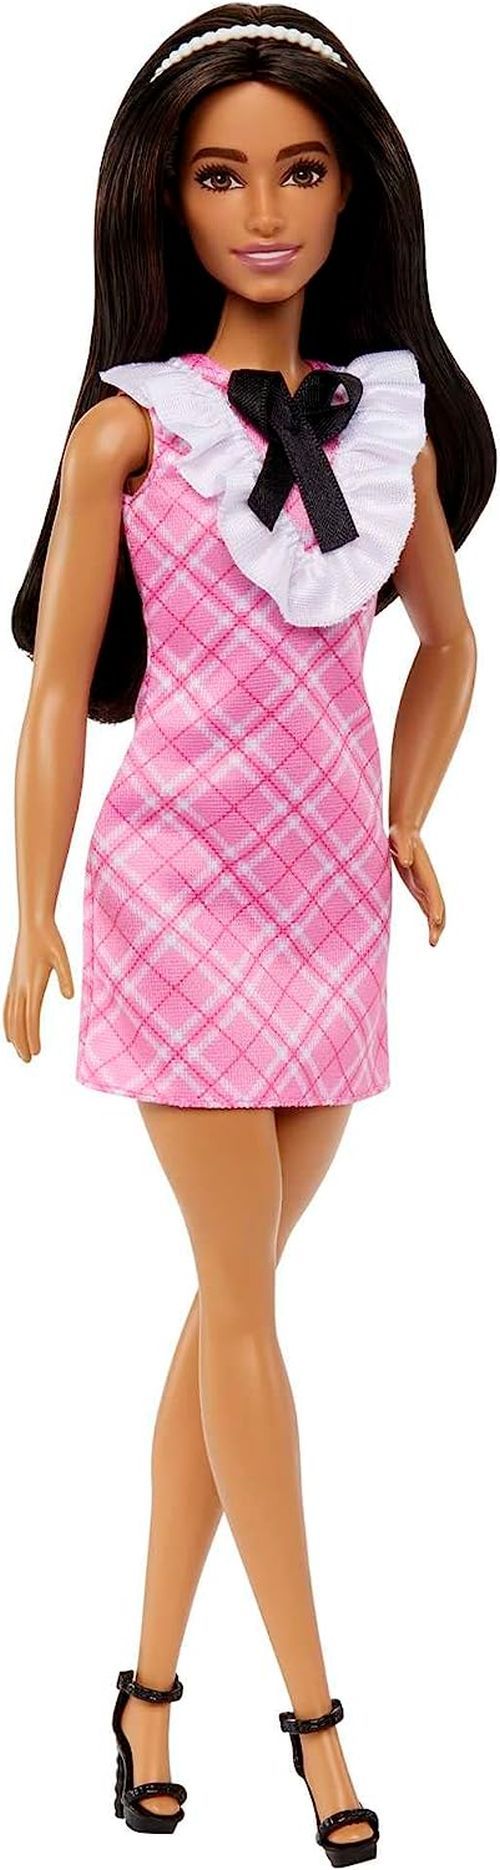 MATTEL Barbie In A Pink Plaid Dress - DOLLS